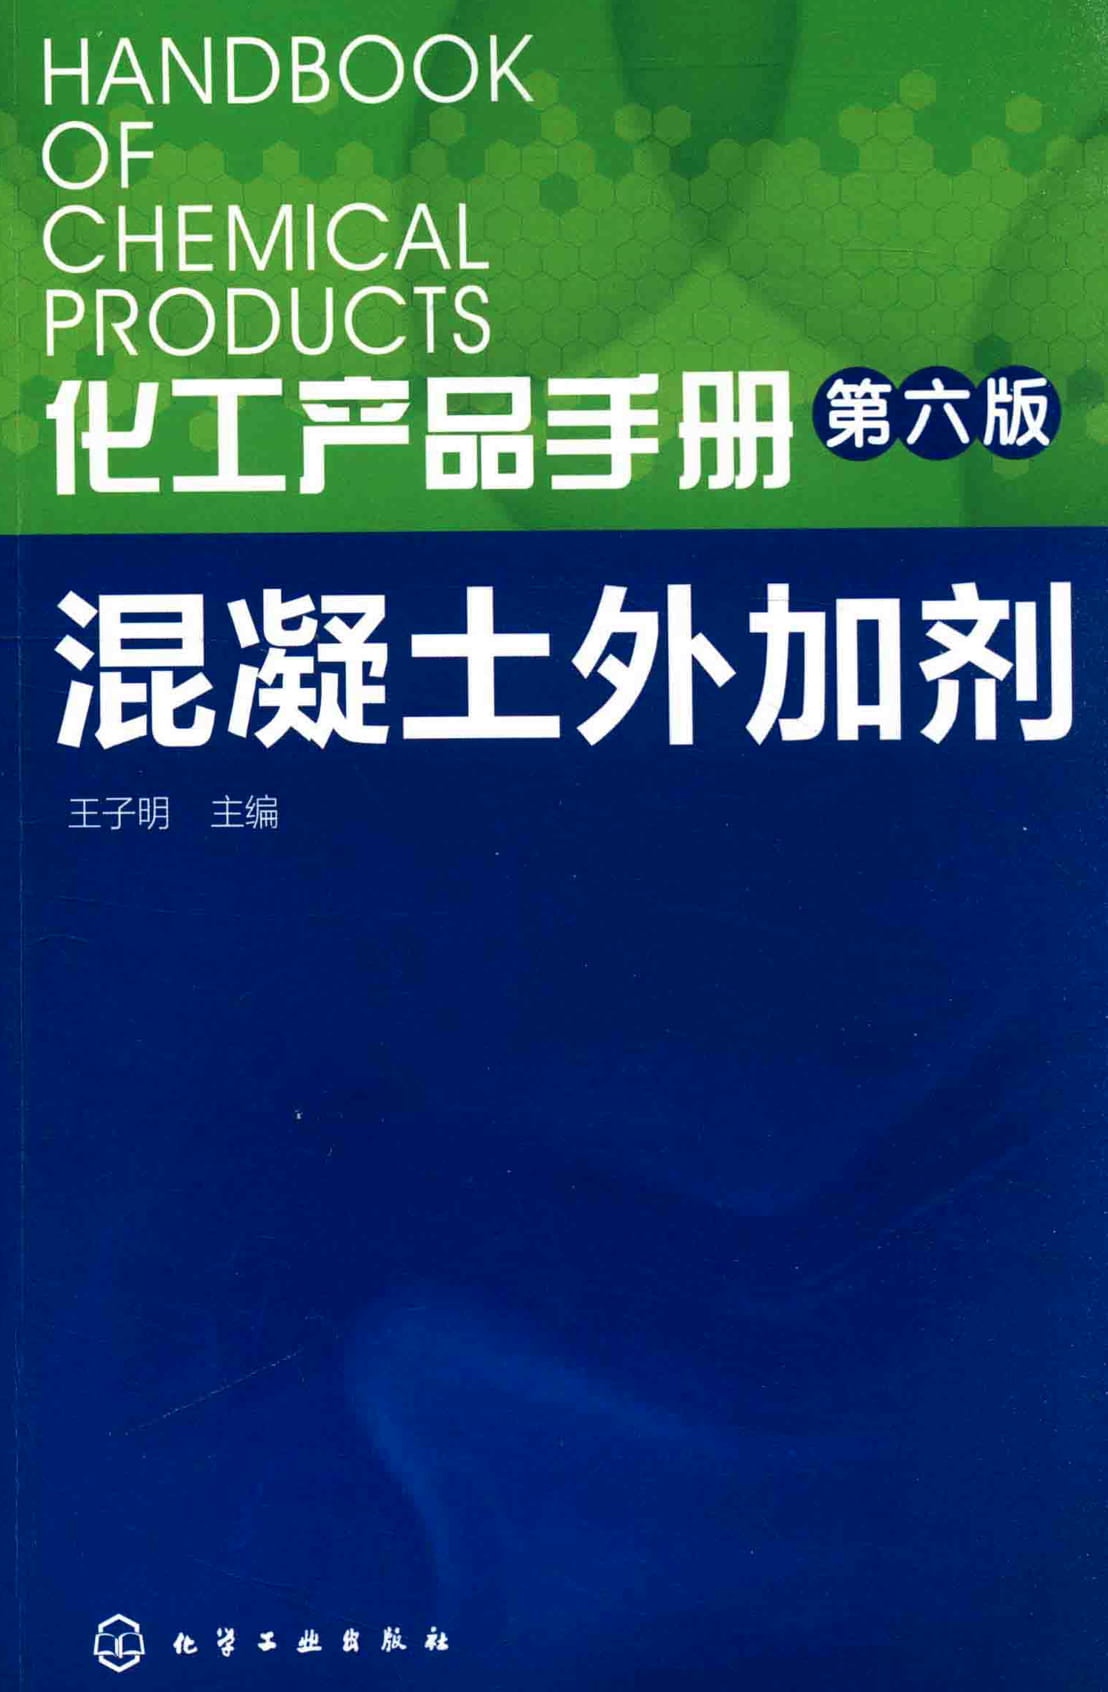 化工产品手册 第六版 混凝土外加剂 (王子明 主编)